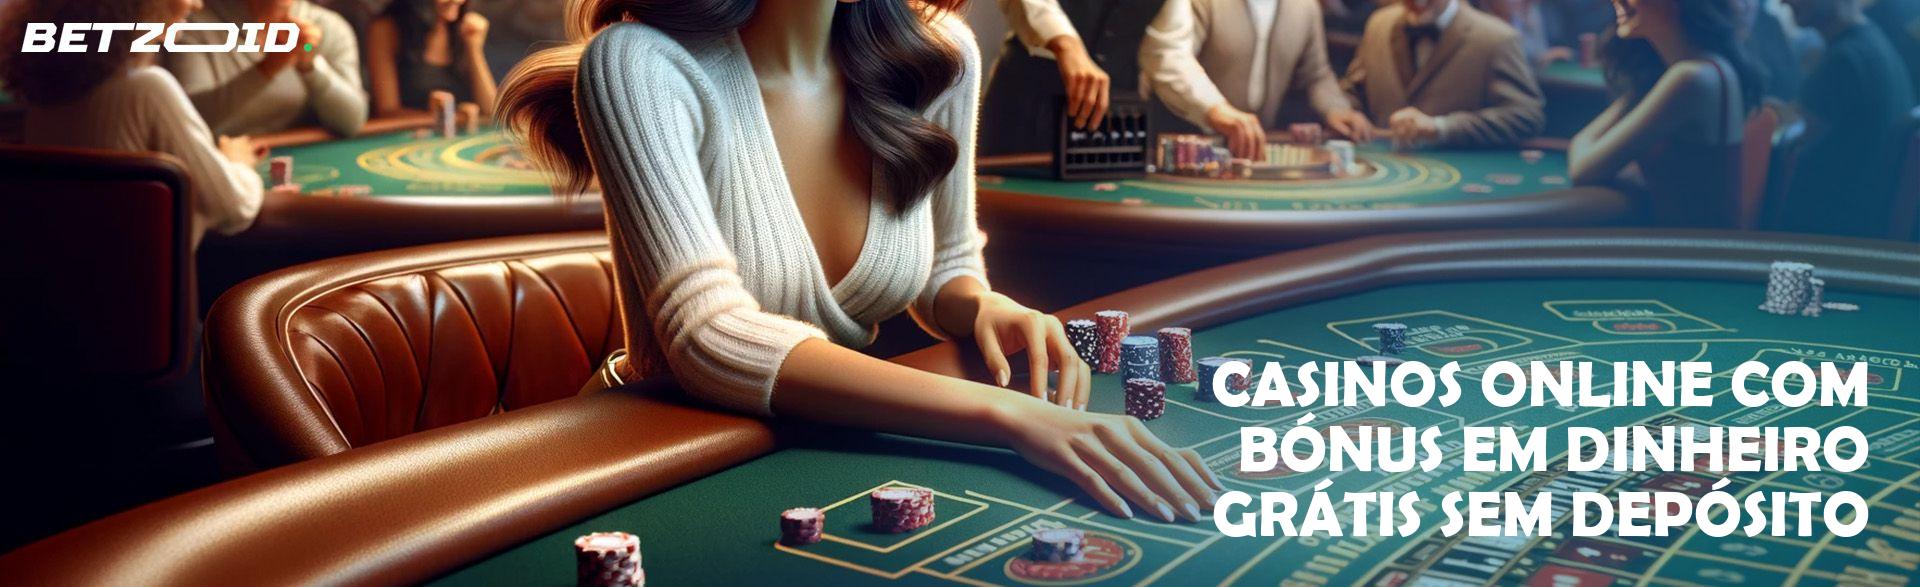 Casinos Online com Bónus em Dinheiro Grátis sem Depósito.